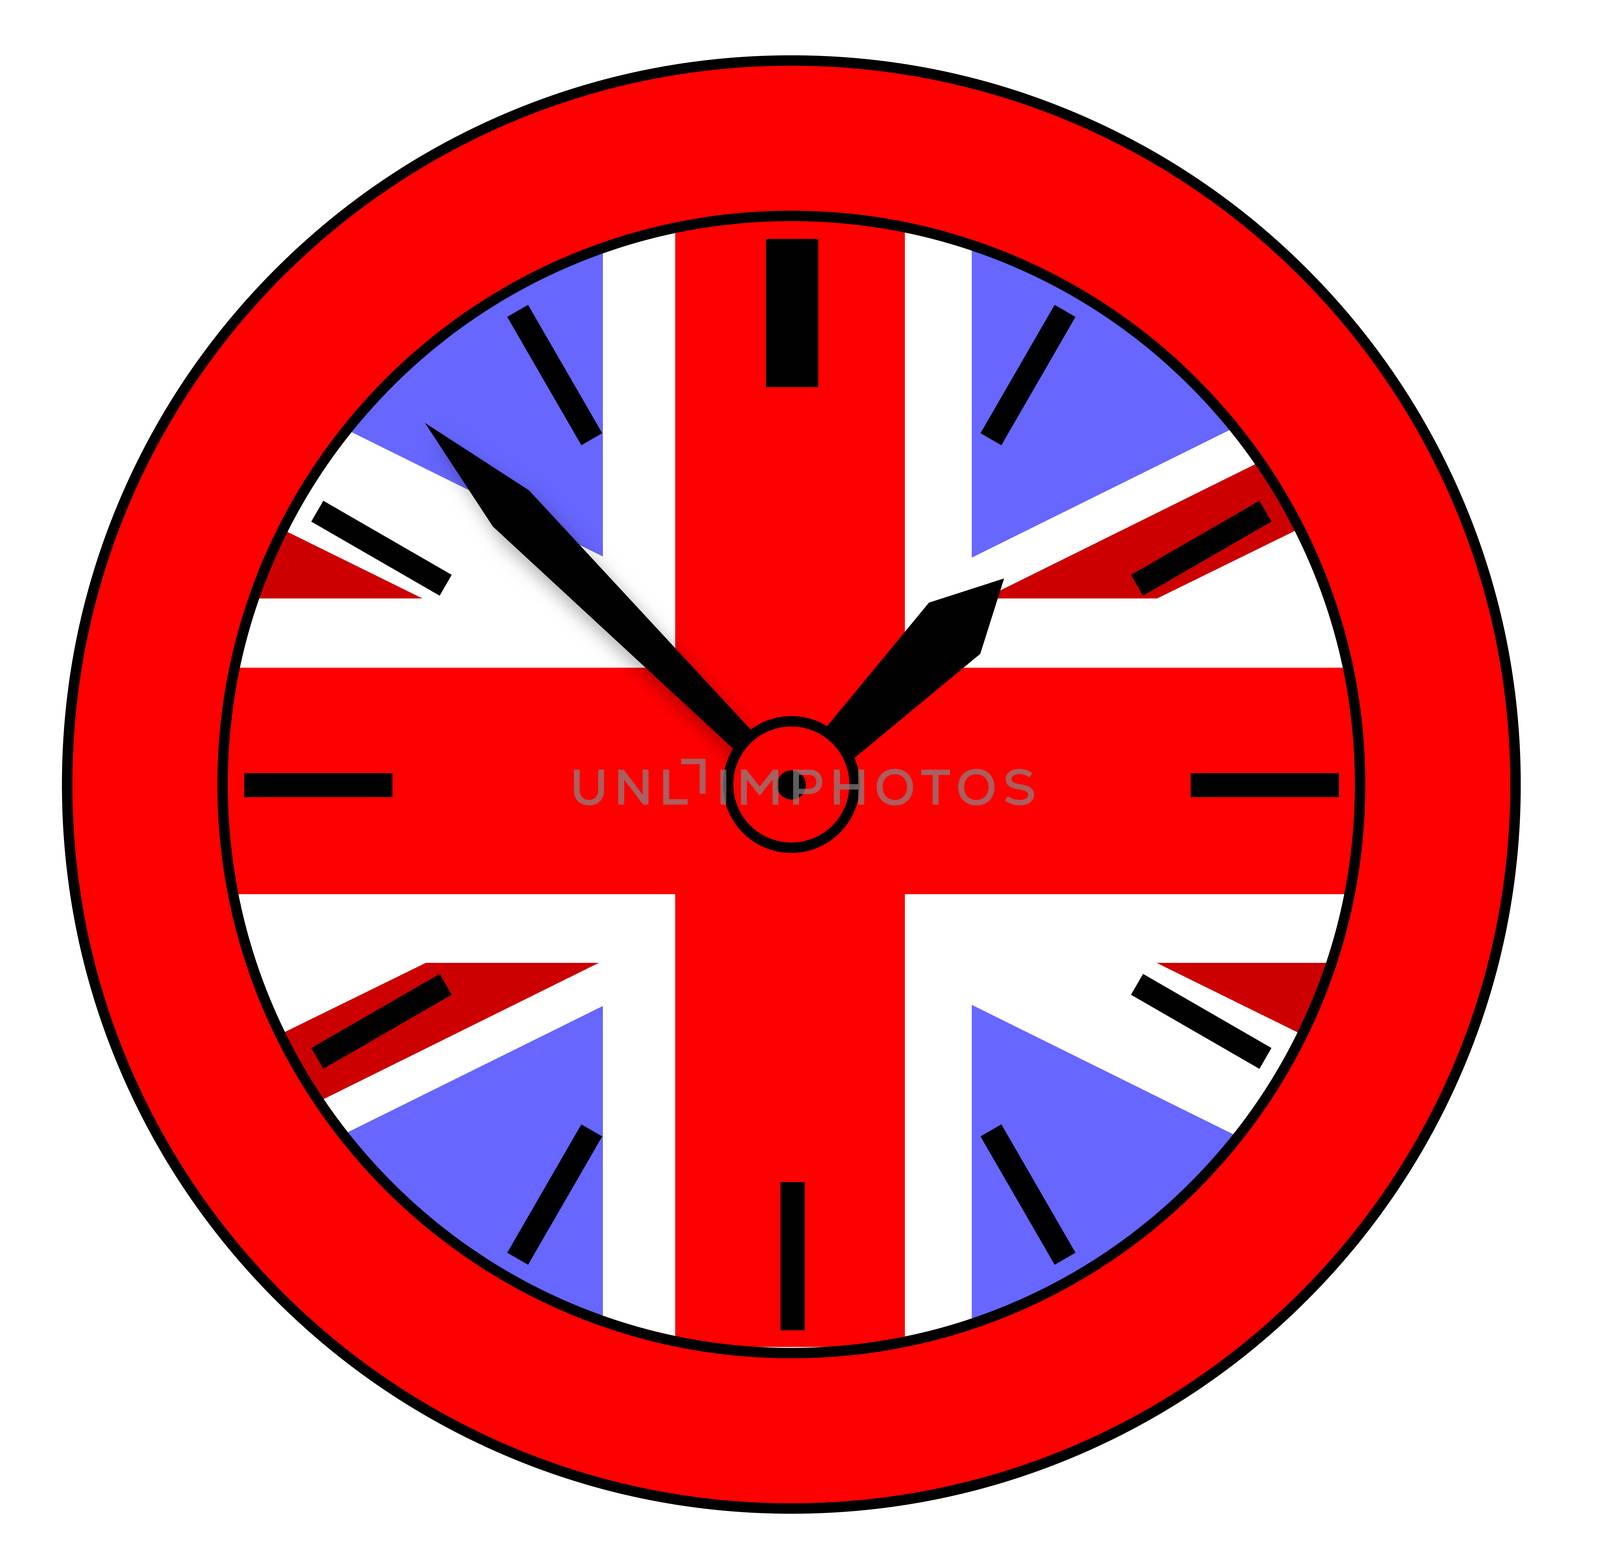 Union Jack Clock by Bigalbaloo